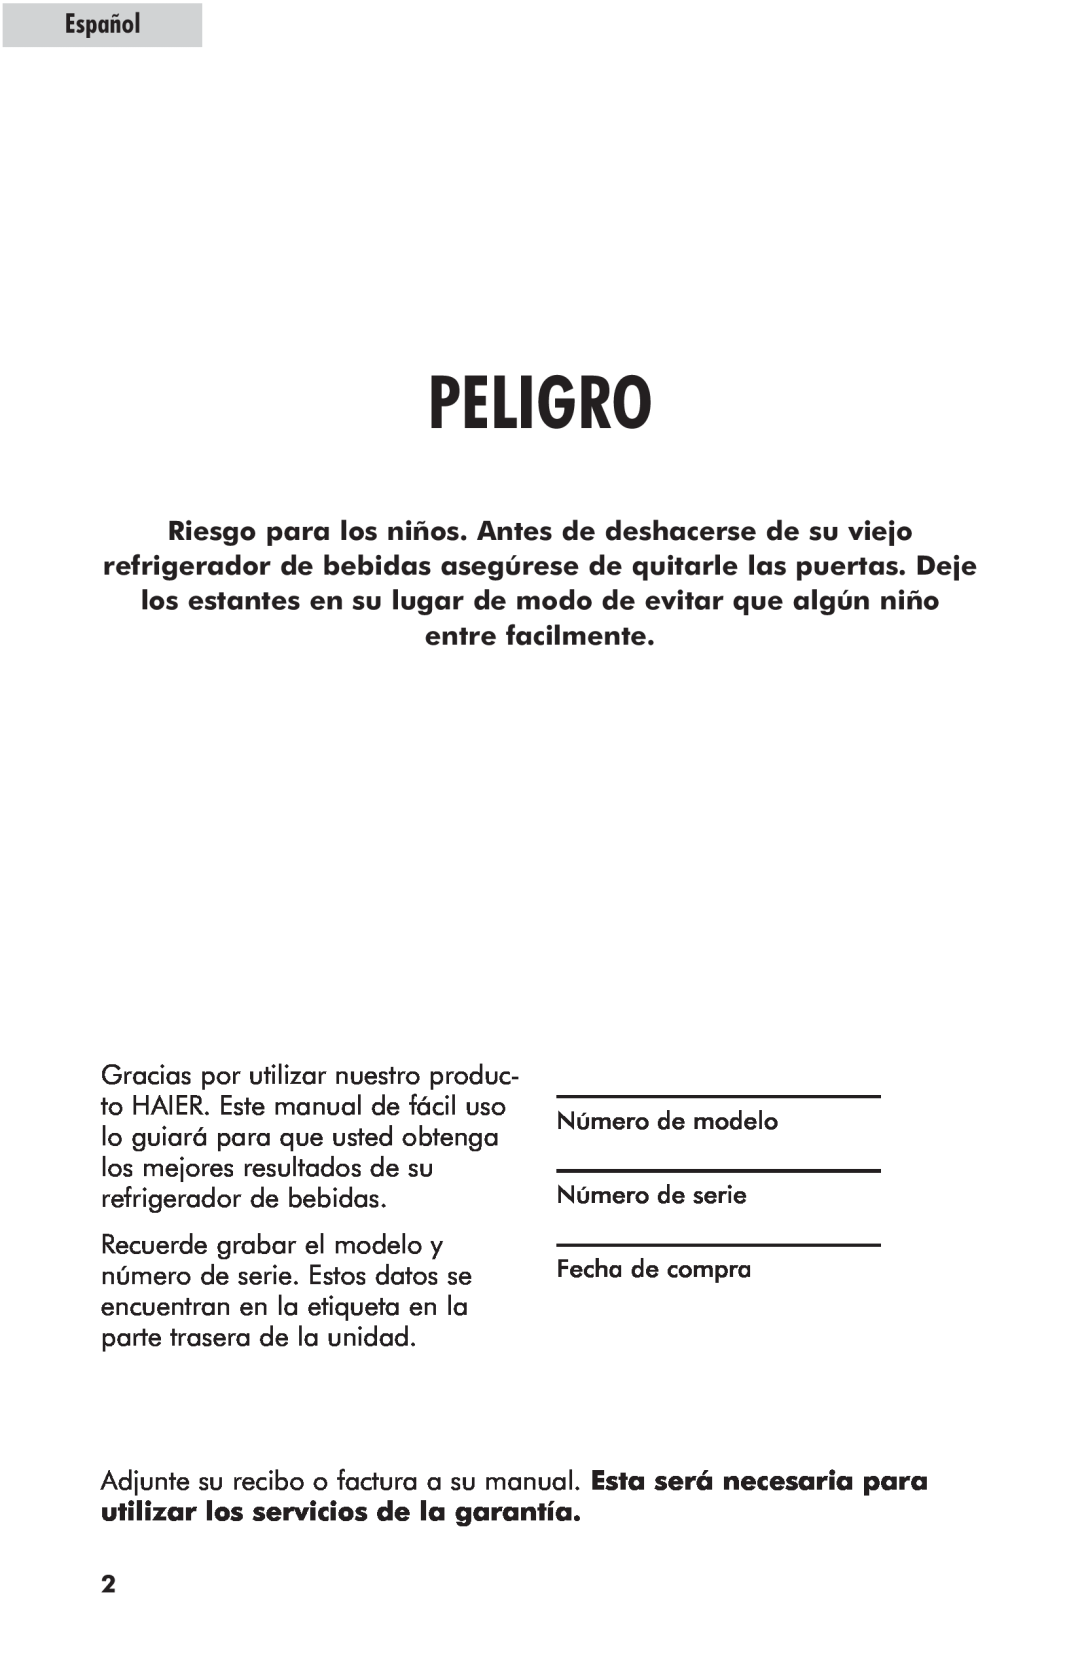 Haier hc125fvs user manual Peligro, entre facilmente, Español 